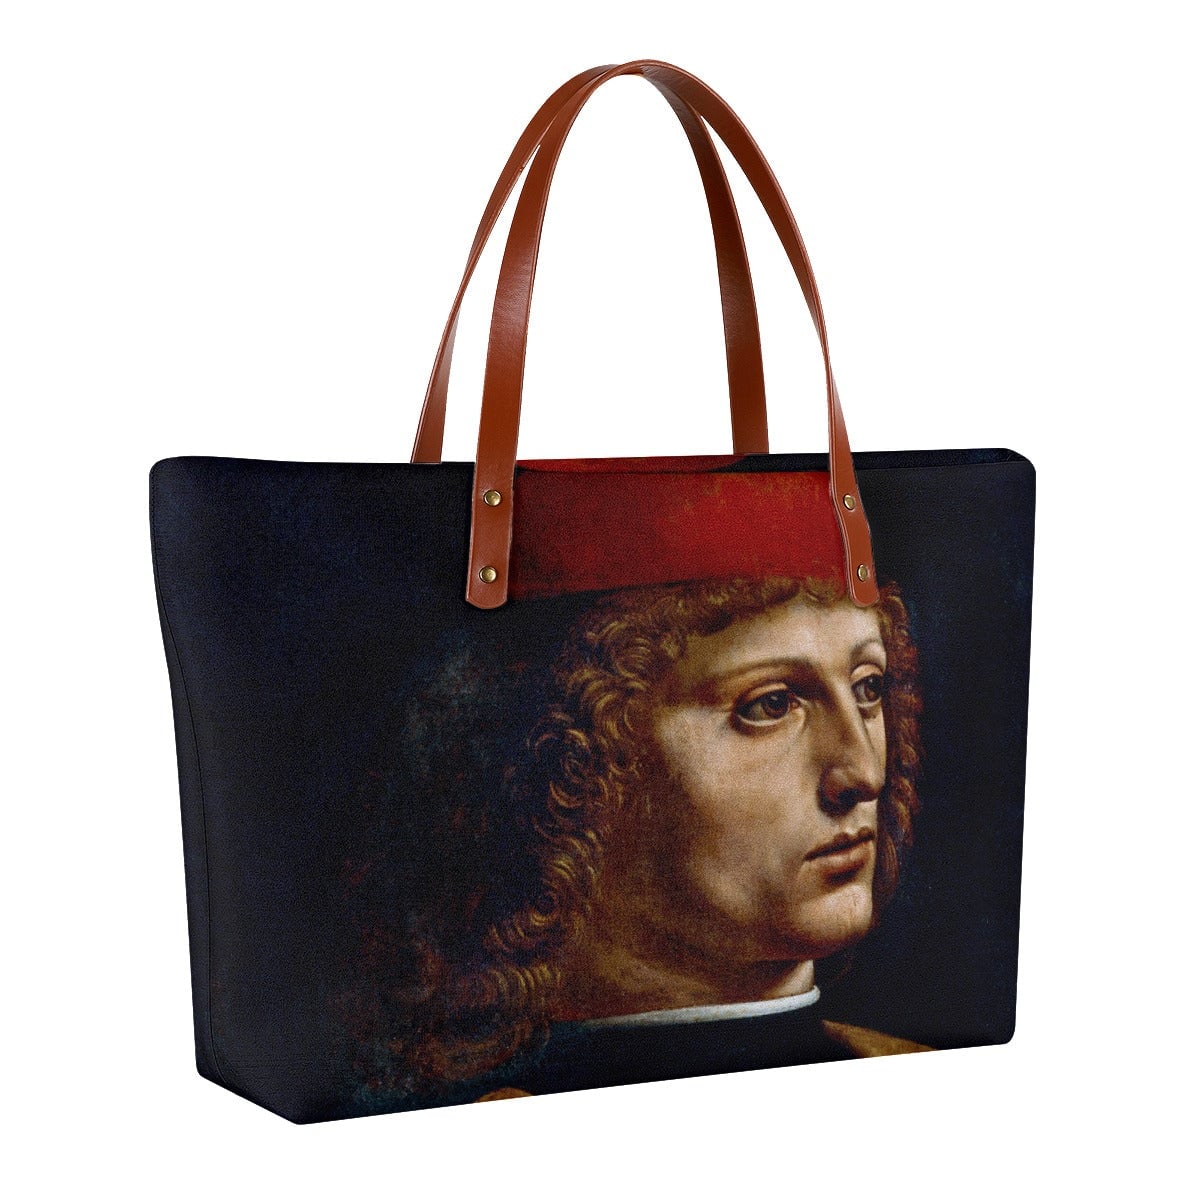 Leonardo da Vinci’s The Portrait of a Musician Tote Bag